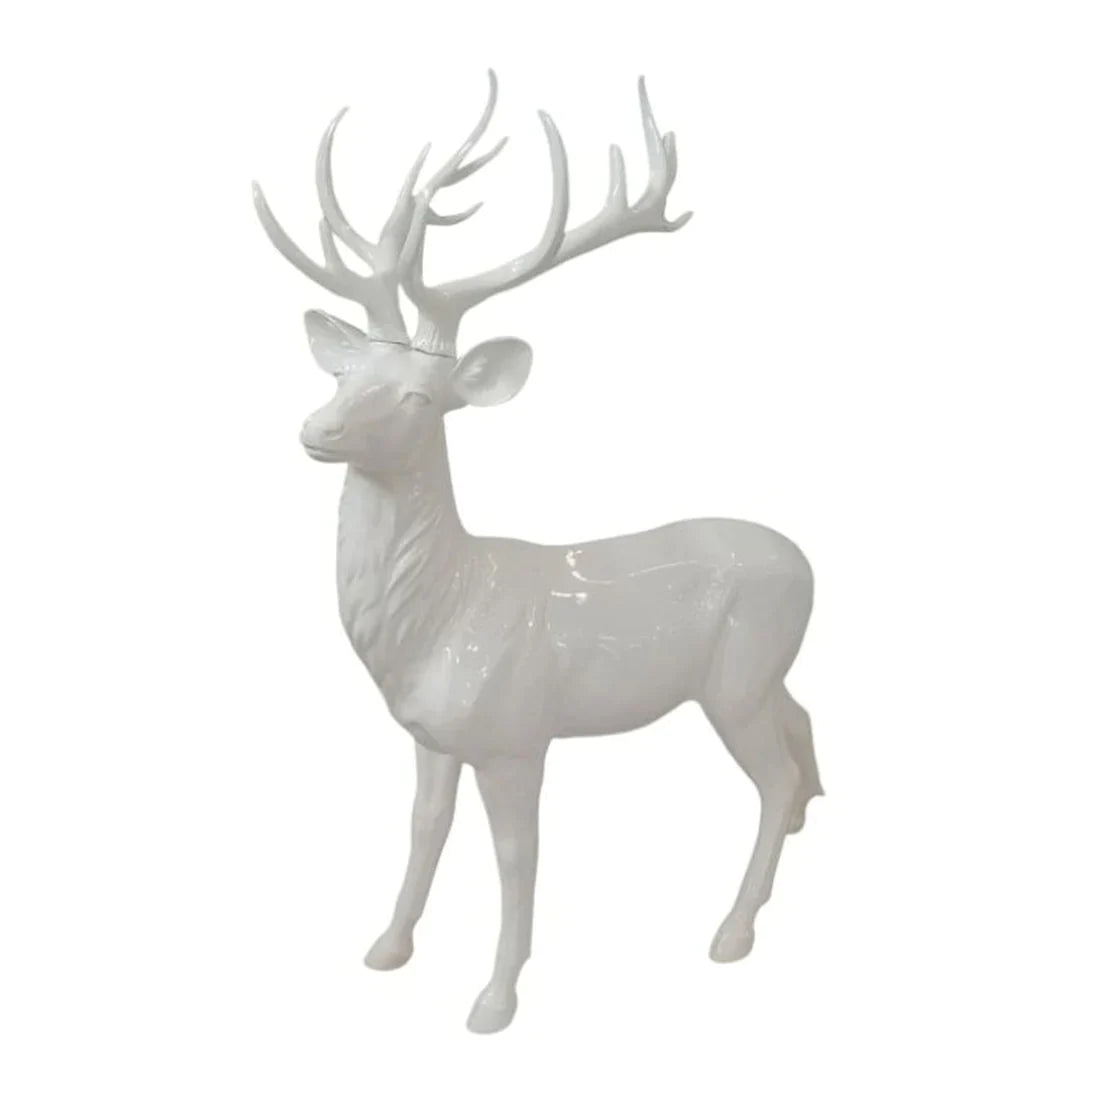 48" White Modern Standing Deer